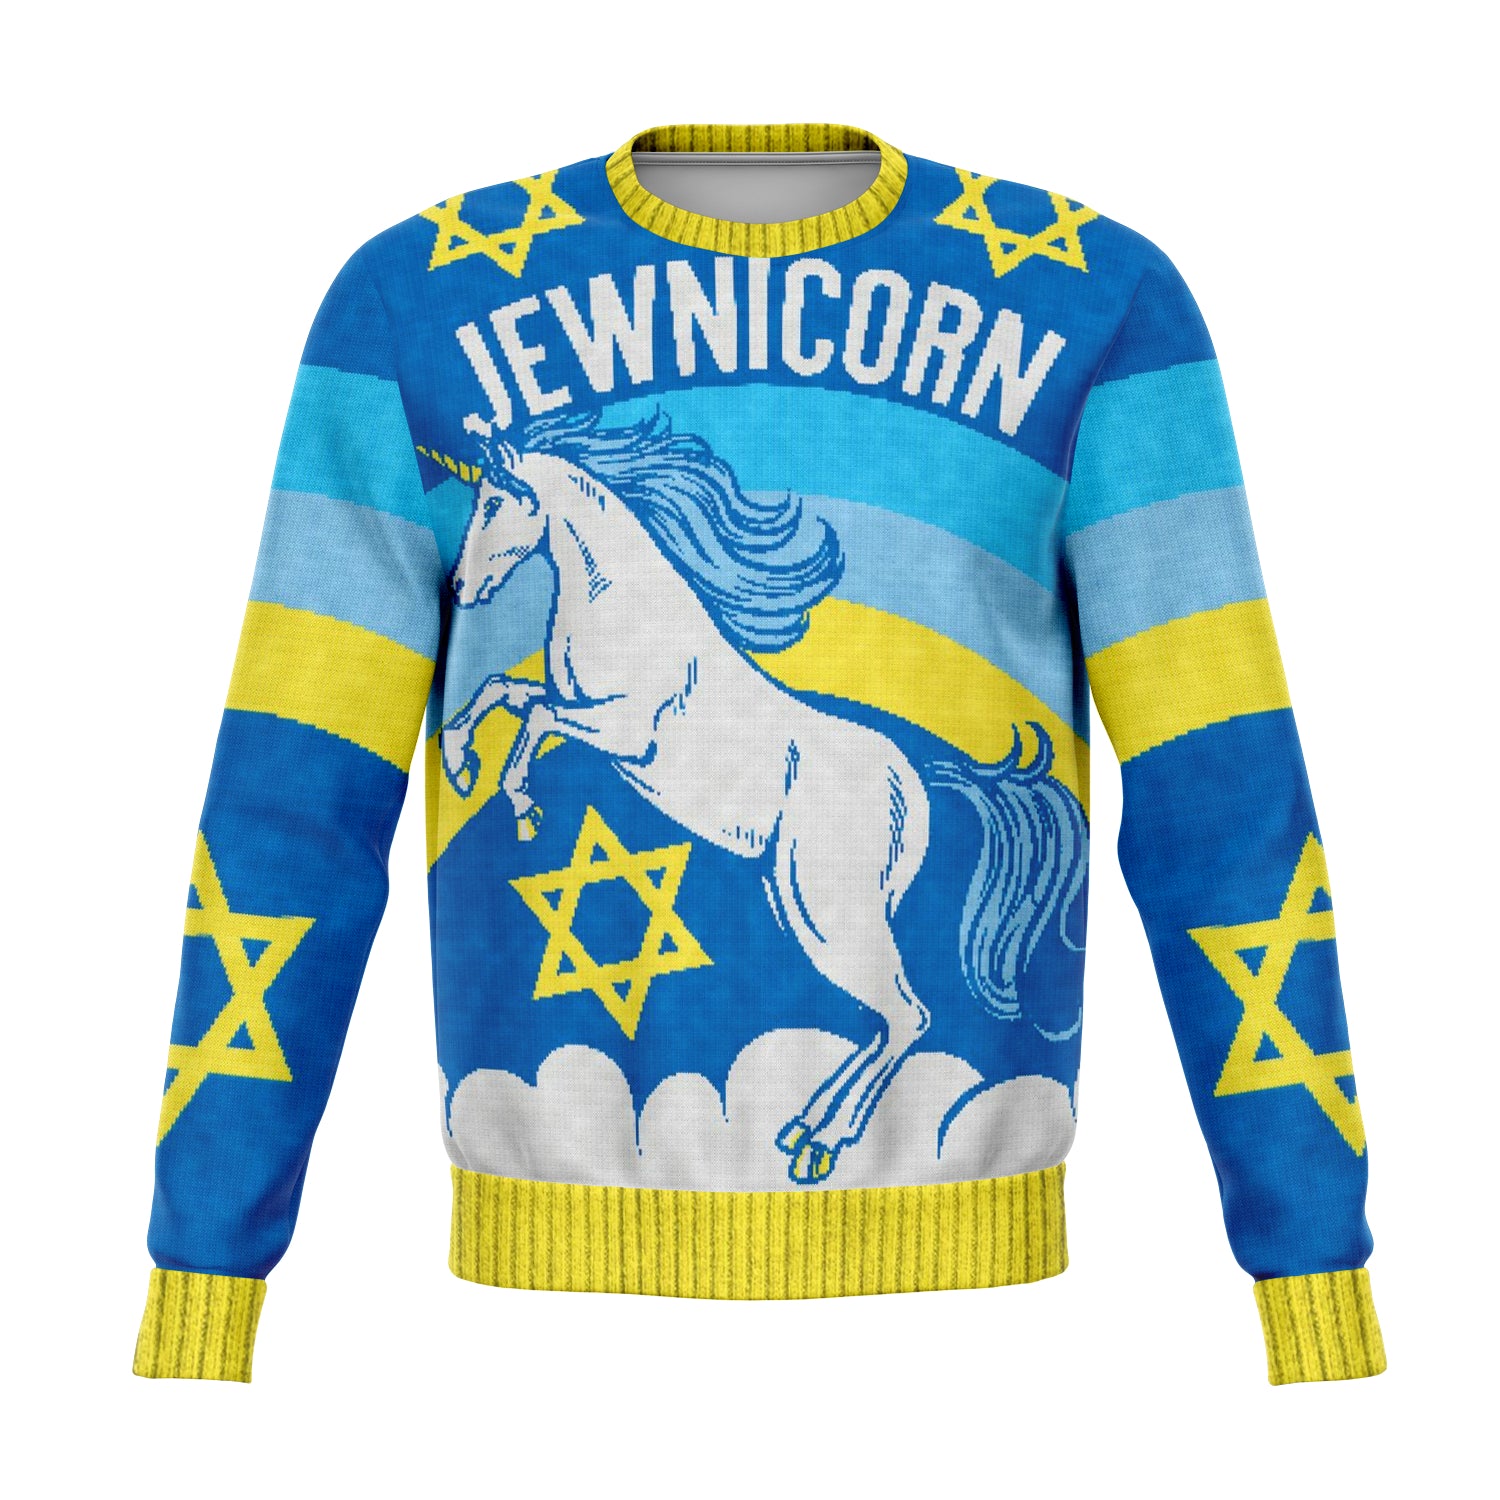 Jewnicorn Sweatshirt